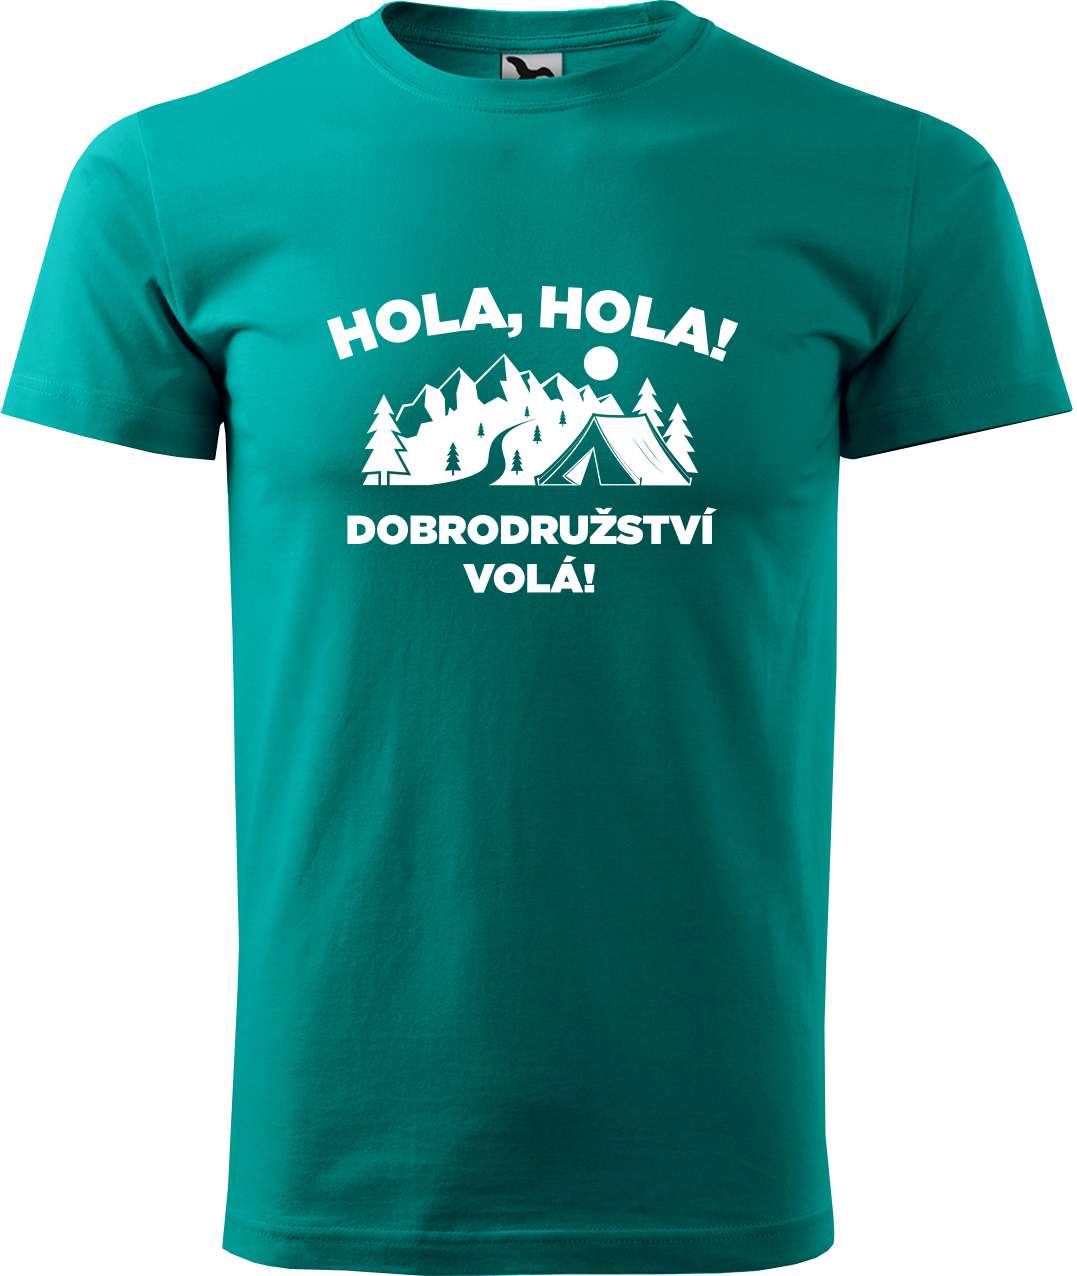 Pánské cestovatelské tričko - Hola hola! Dobrodružství volá! Velikost: S, Barva: Emerald (19), Střih: pánský